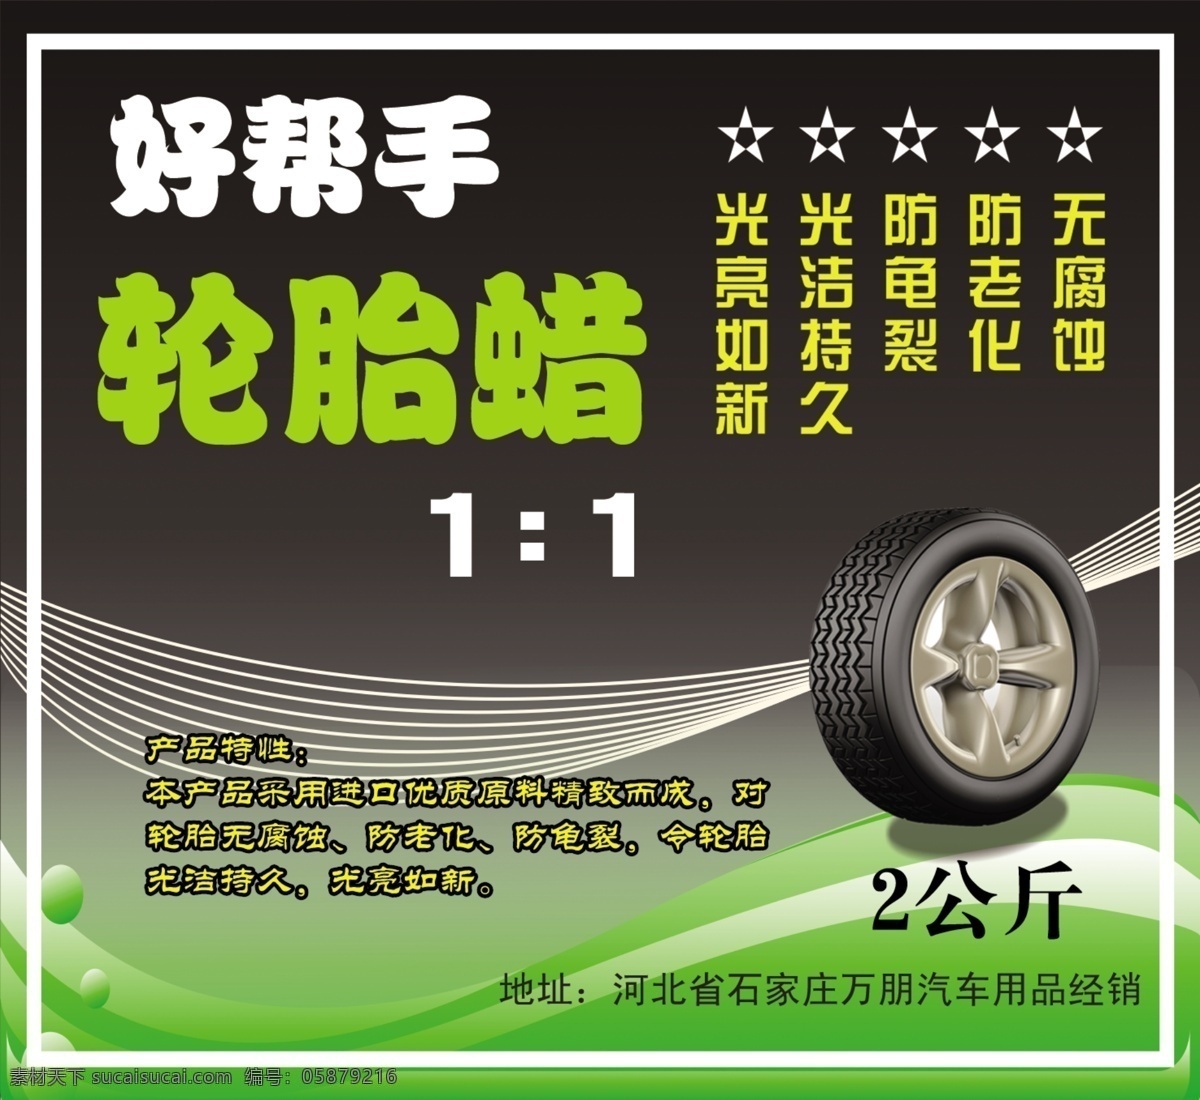 轮胎 轮胎蜡 包装 标签 商标 包装设计 洗车 洗车海报 好帮手轮胎蜡